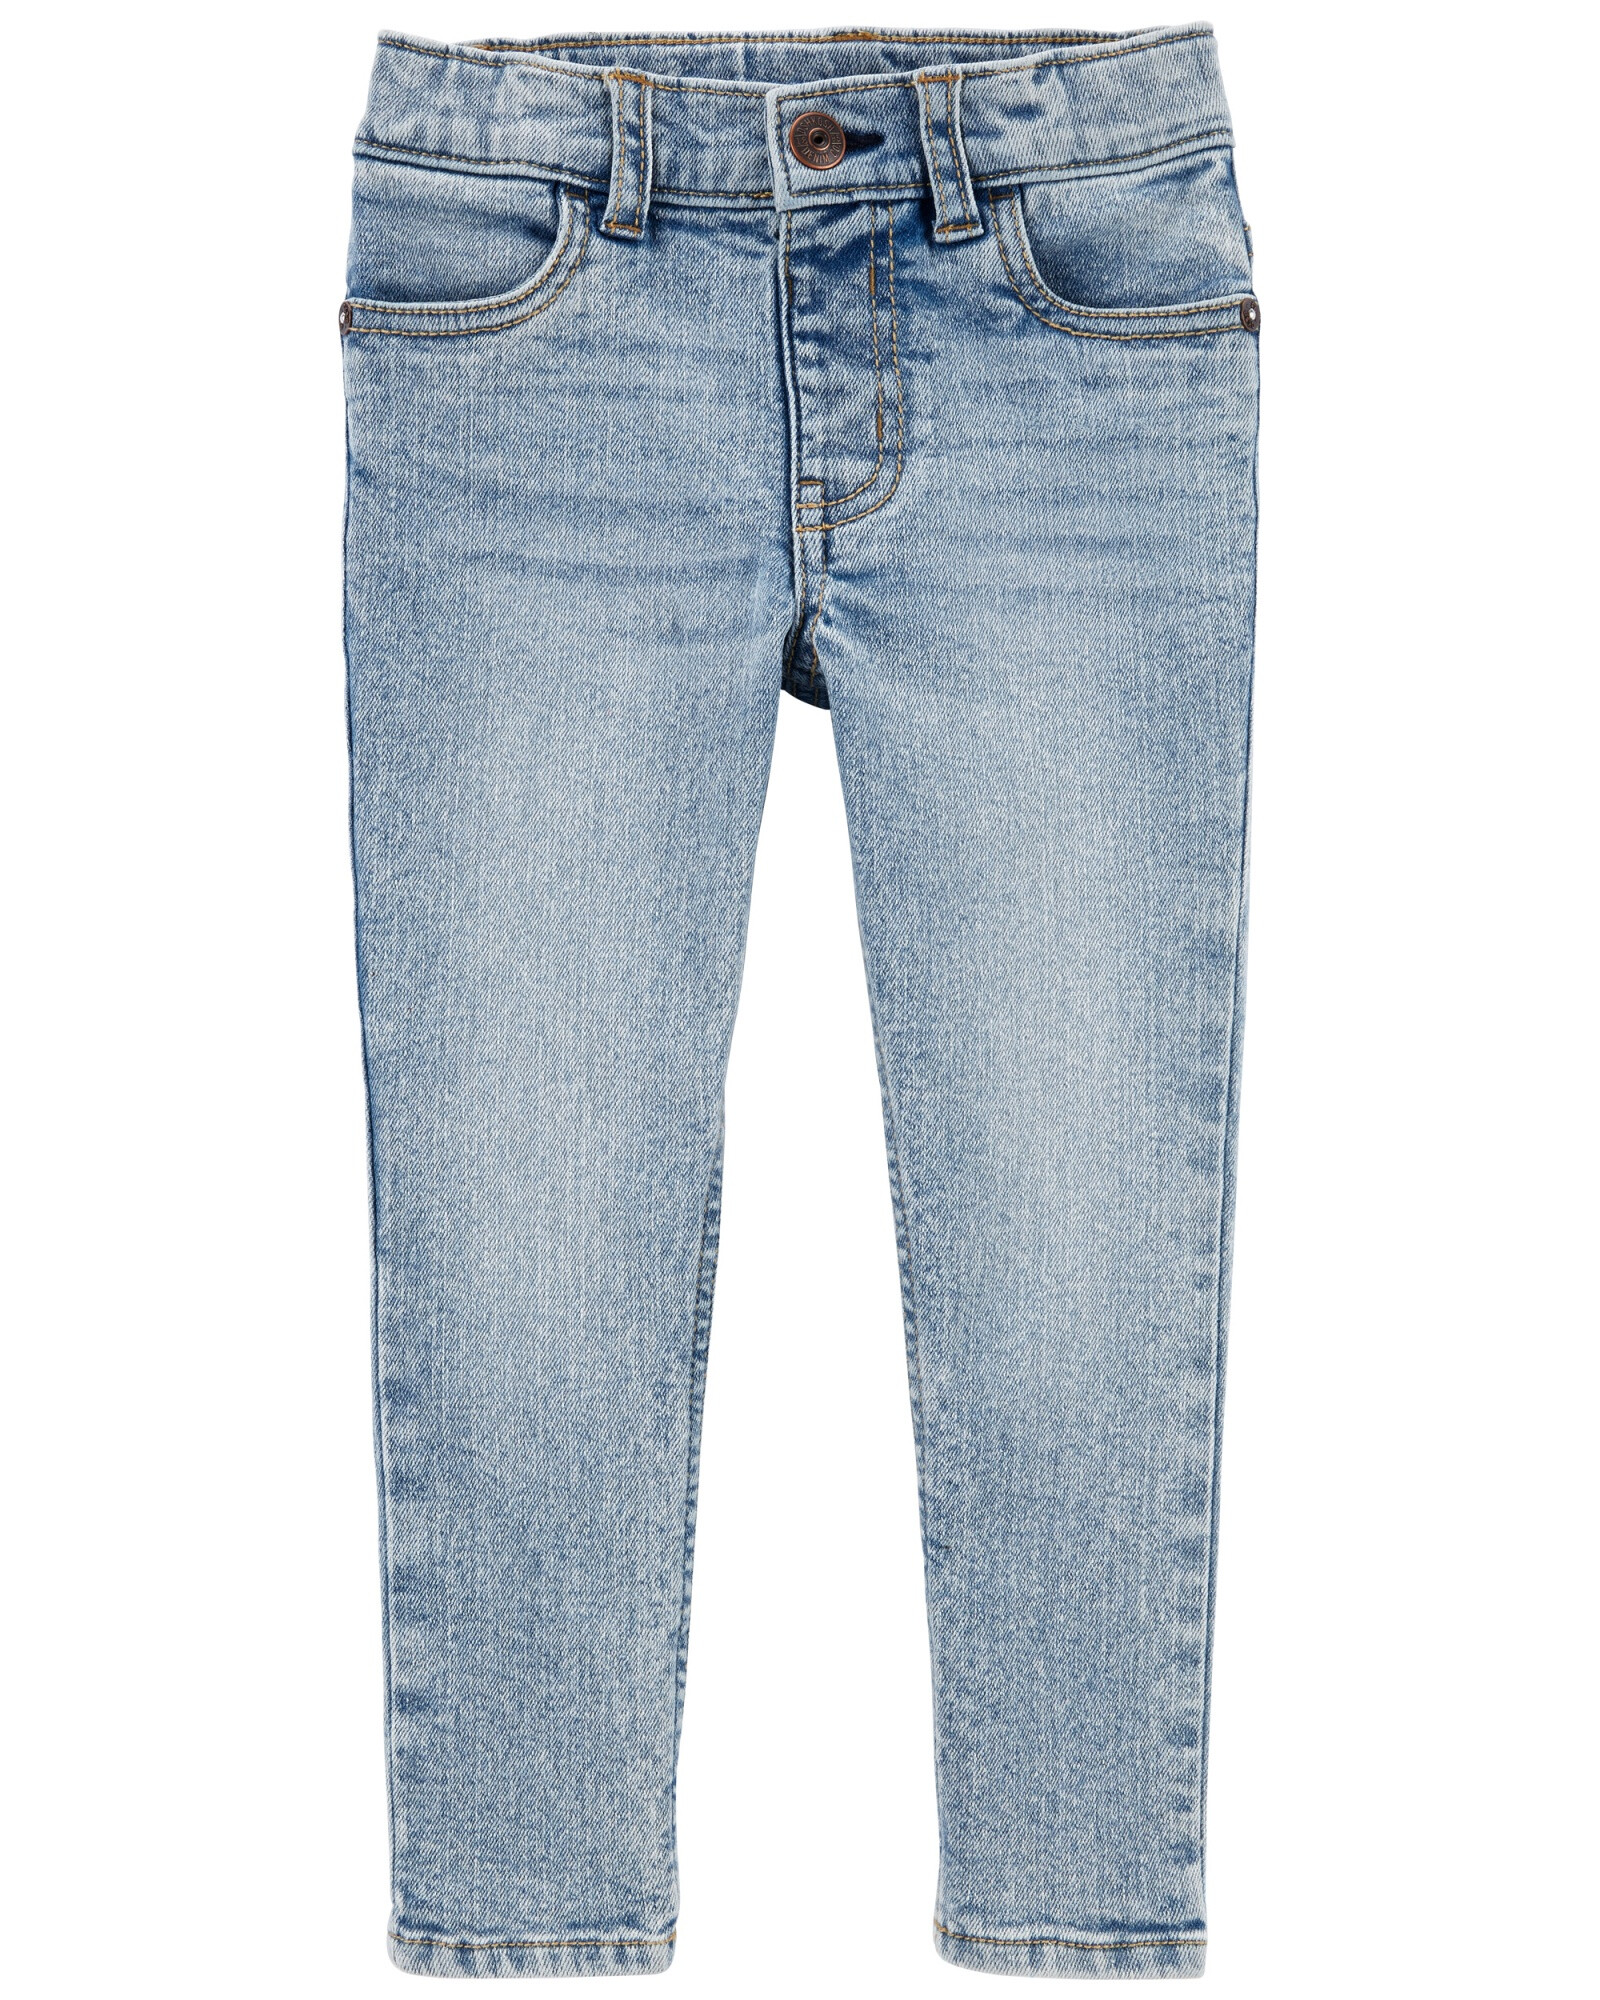 Pantalón de jean ajustado extra largo. Talles 2-5T Sin color